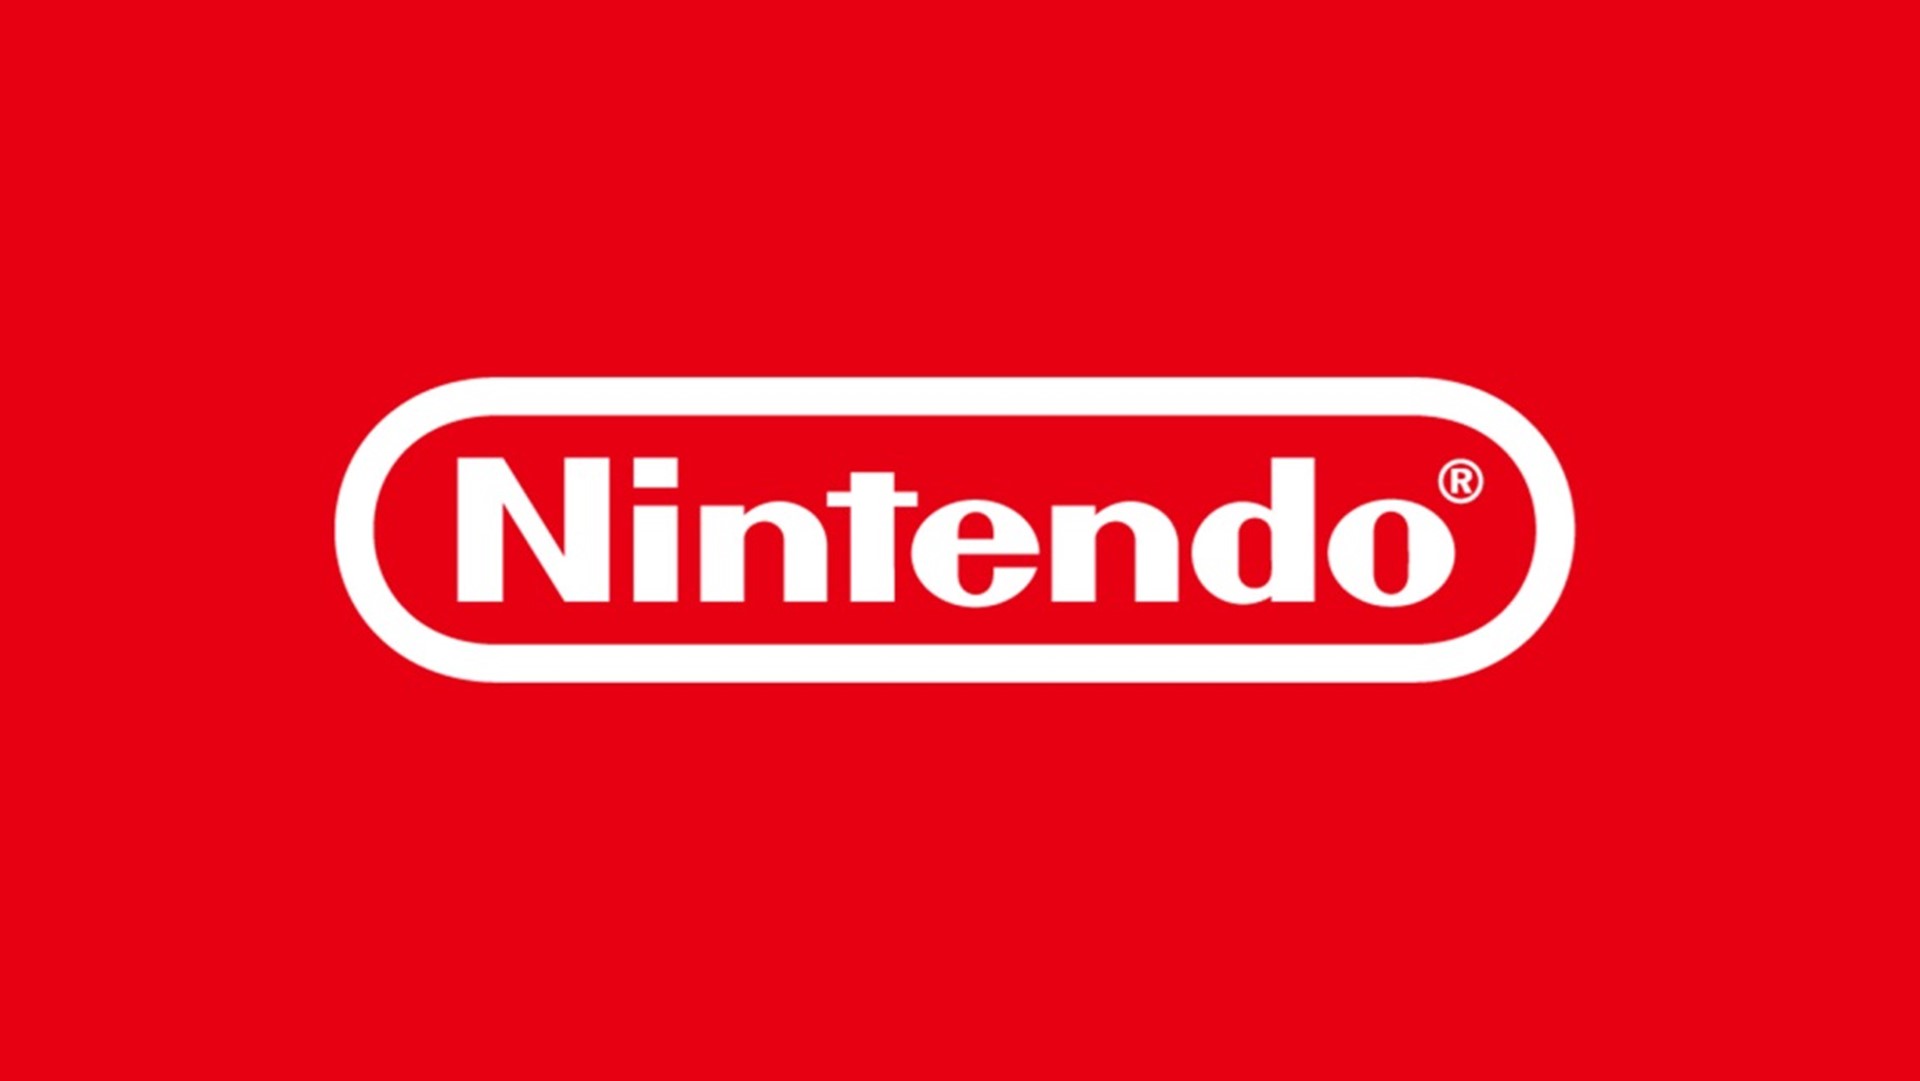 เกิดไฟไหม้ สำนักงานใหญ่ของ Nintendo ที่เกียวโต